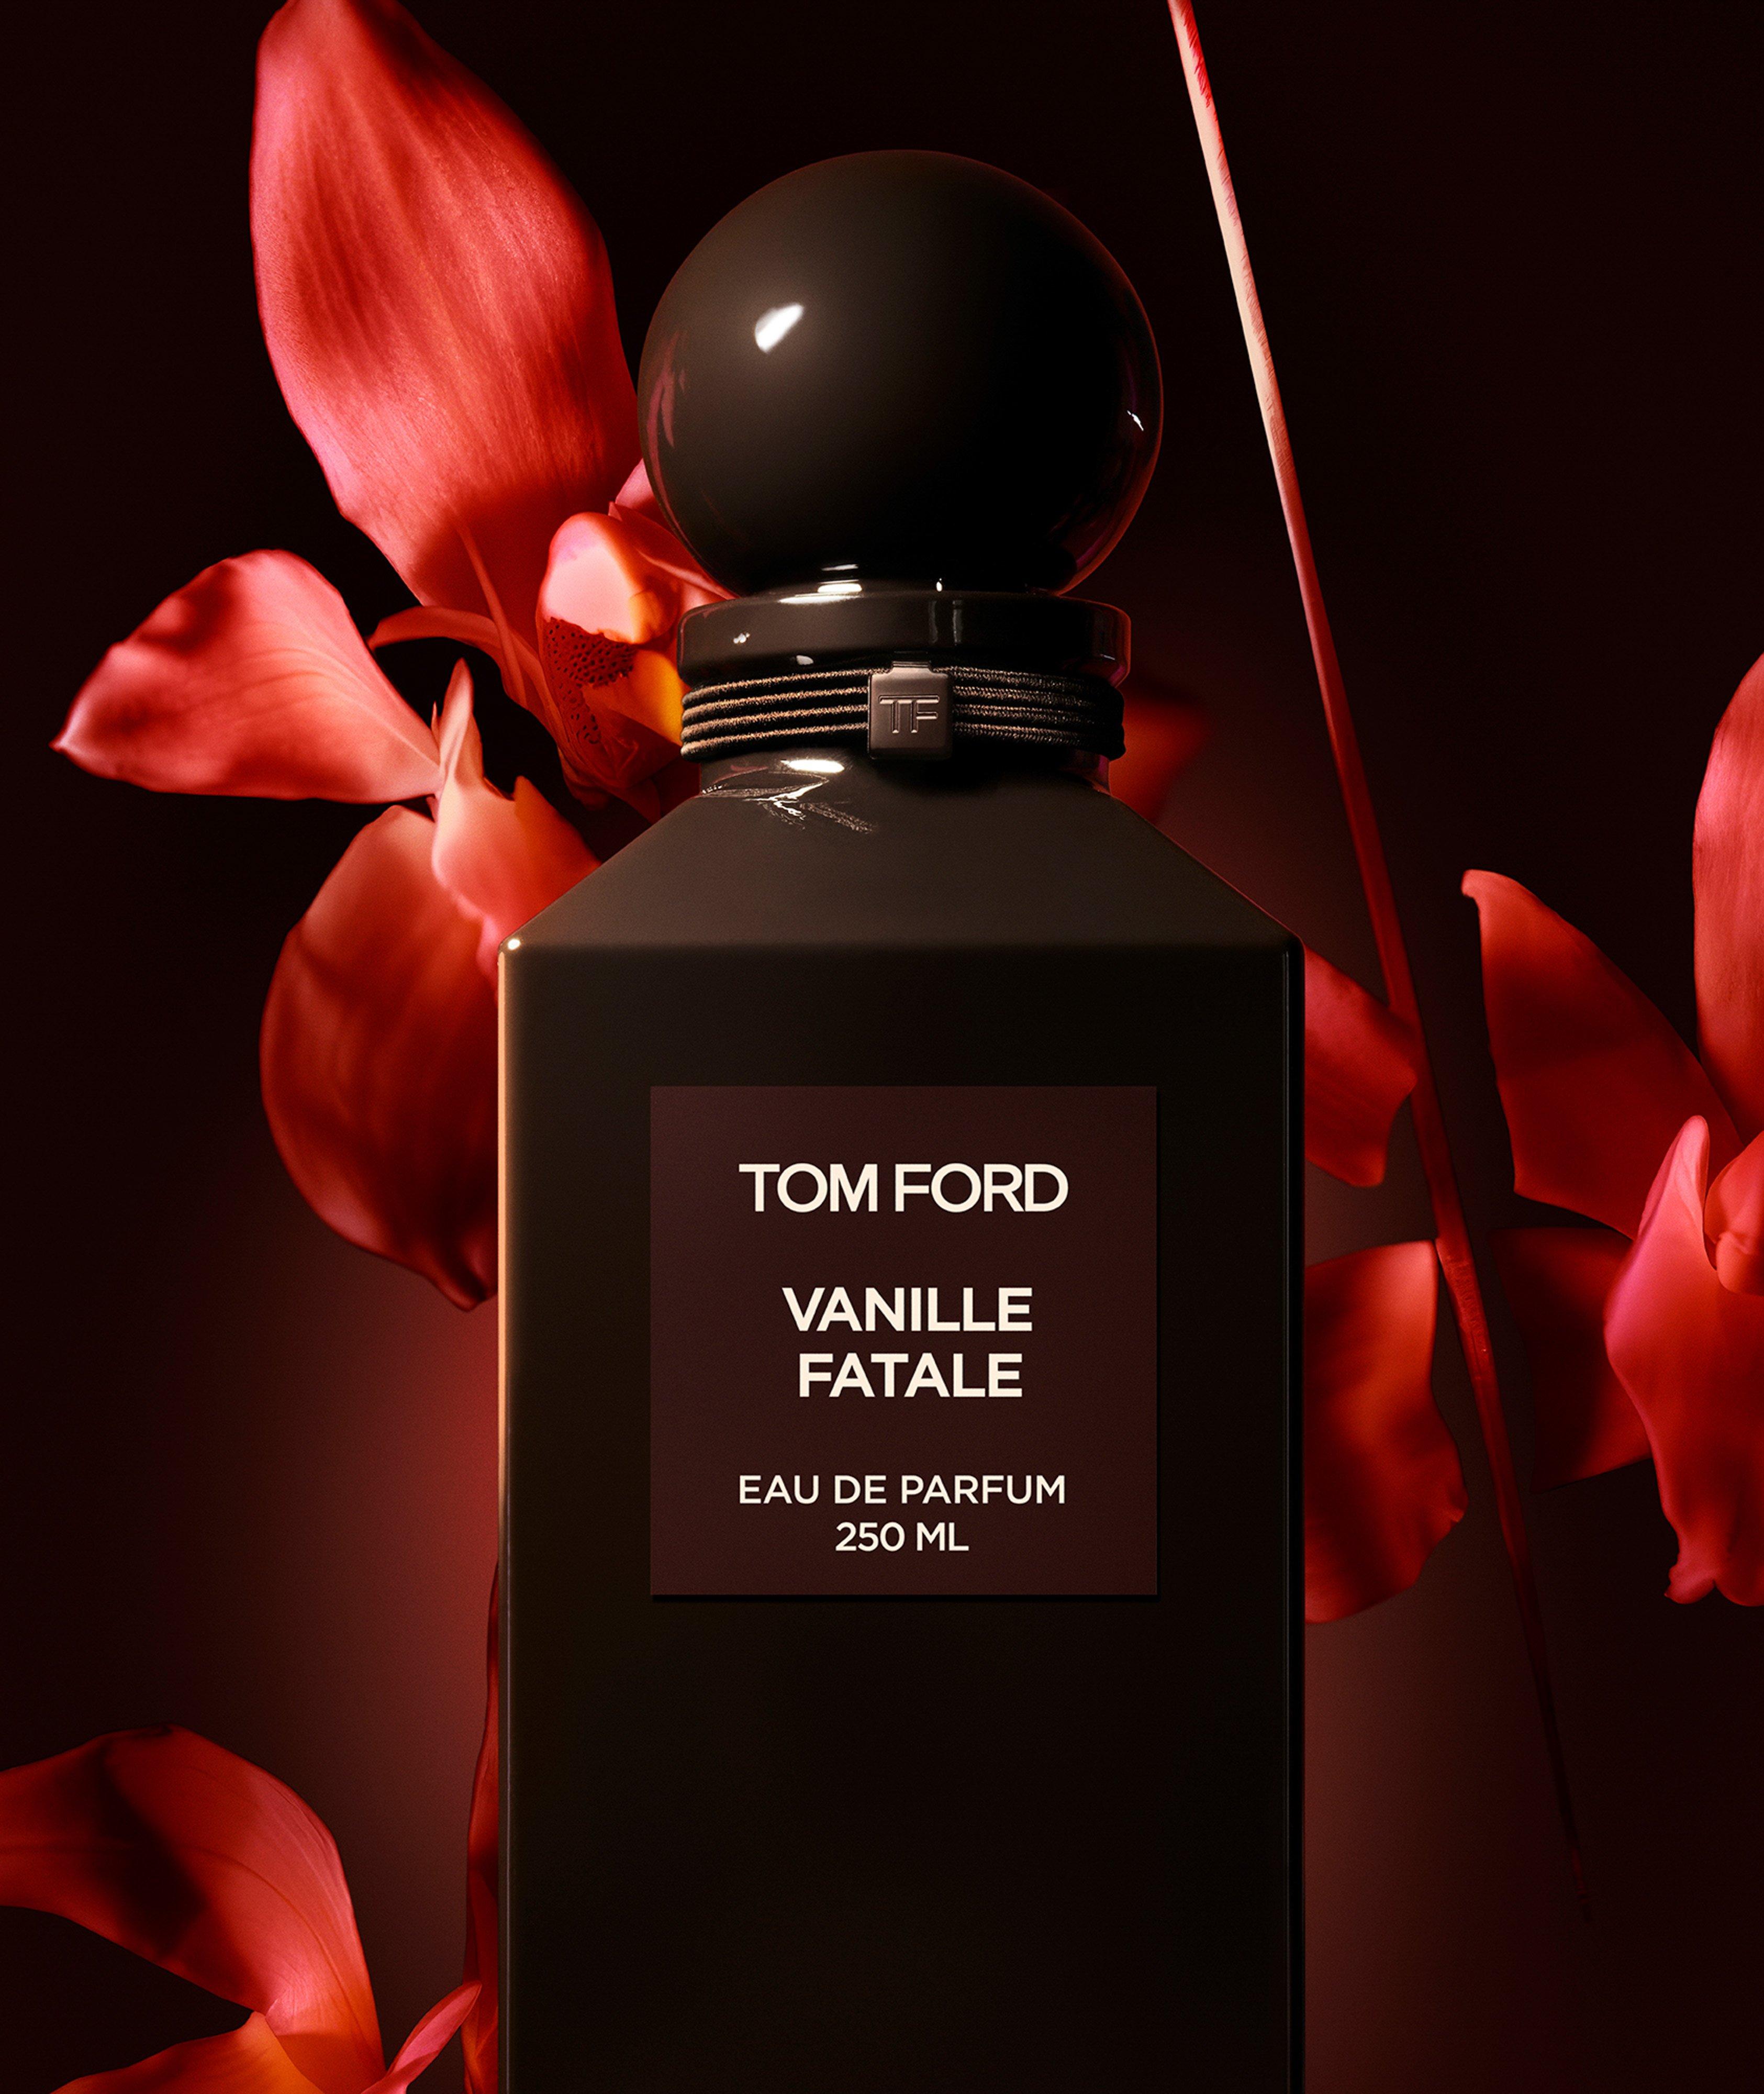 Eau de parfum Vanille fatale (250 ml) image 1